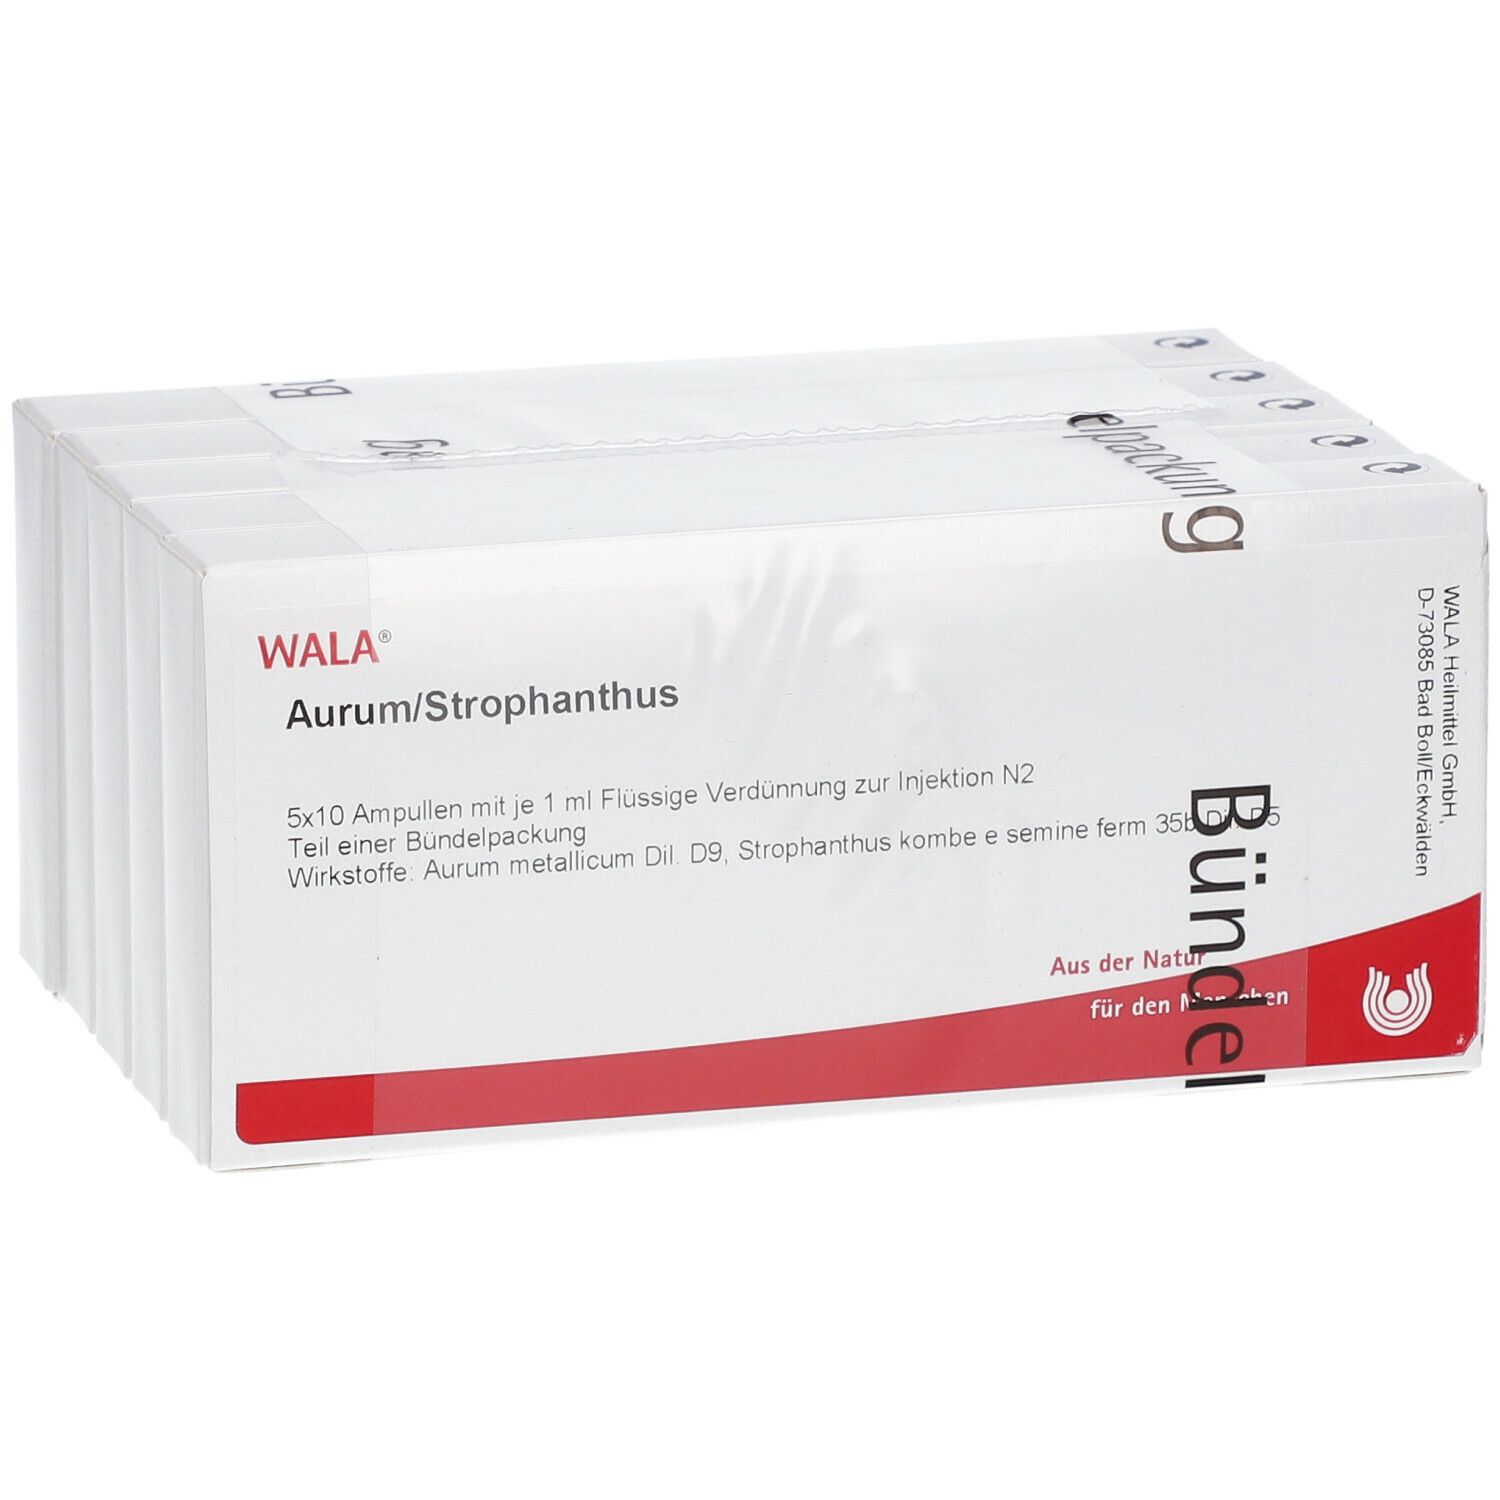 WALA® AURUM/STROPHANTHUS Ampullen